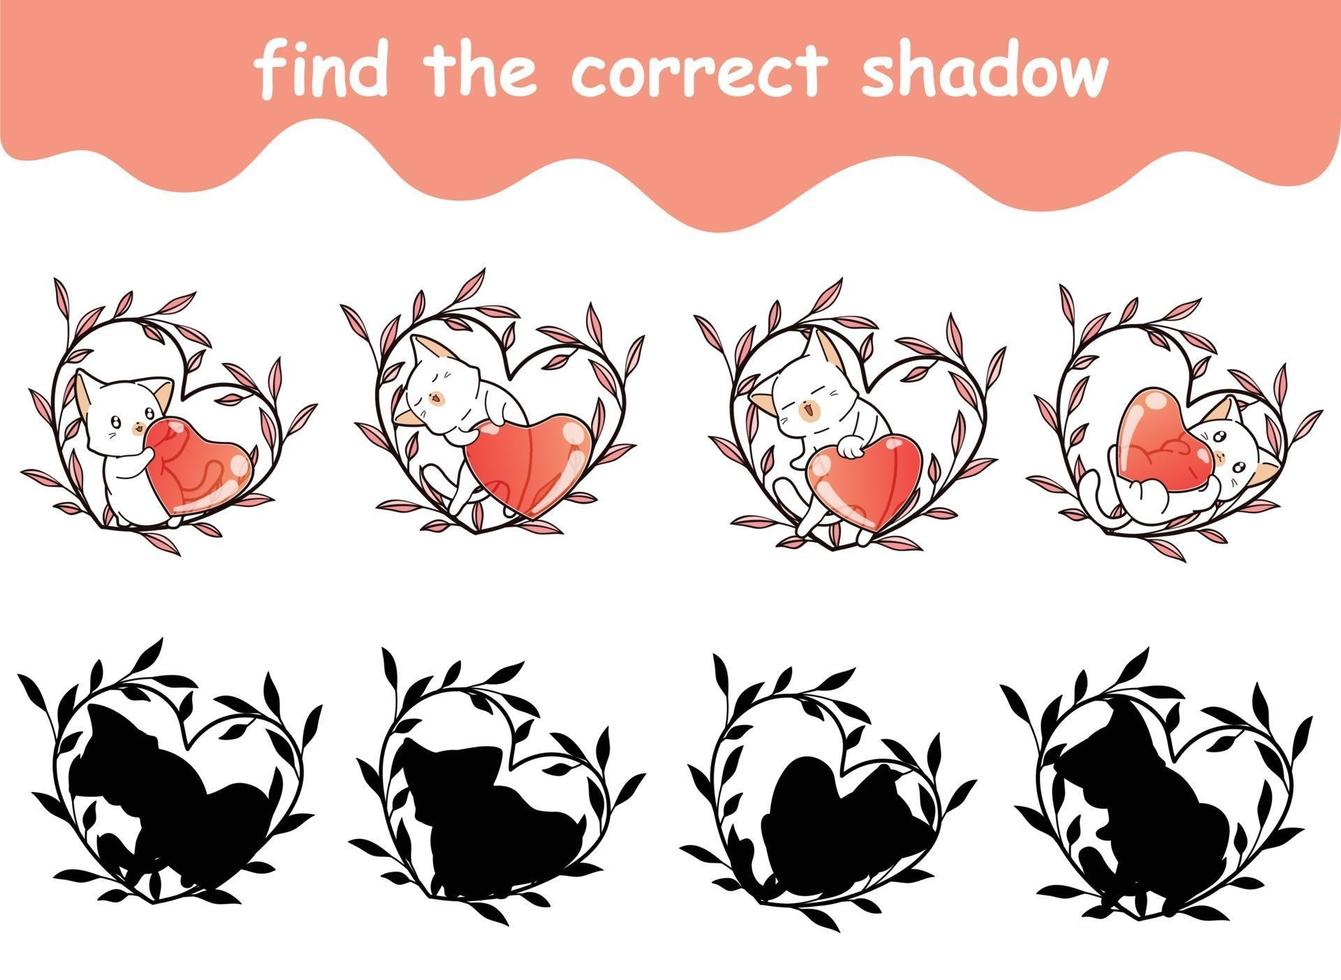 encontre a sombra correta do gato e haert está na coroa do coração vetor